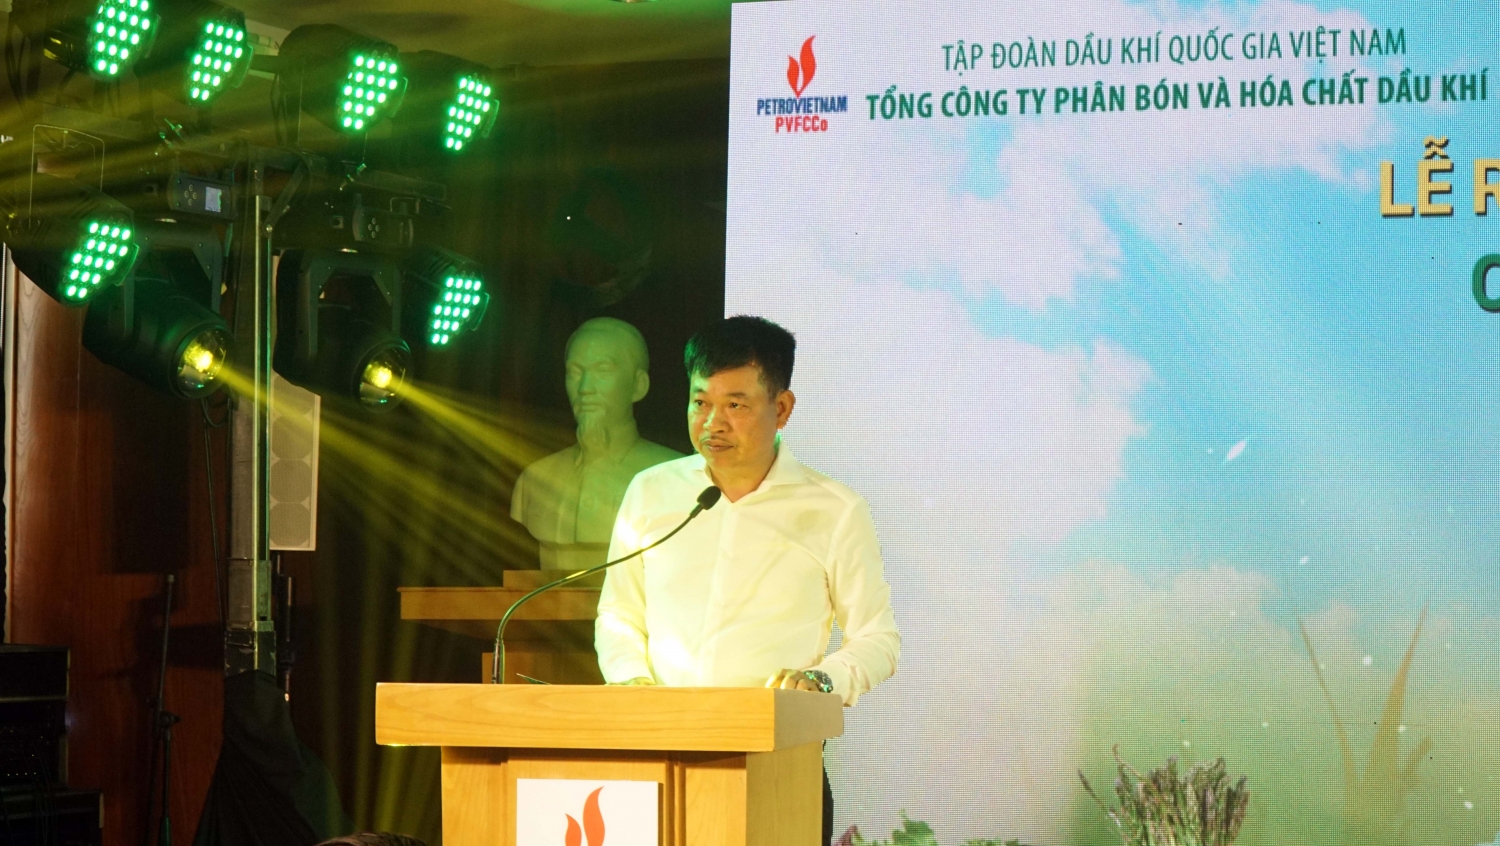 Ông Lê Cự Tân - Tổng Giám đốc PVFCCo phát biểu tại buổi lễ